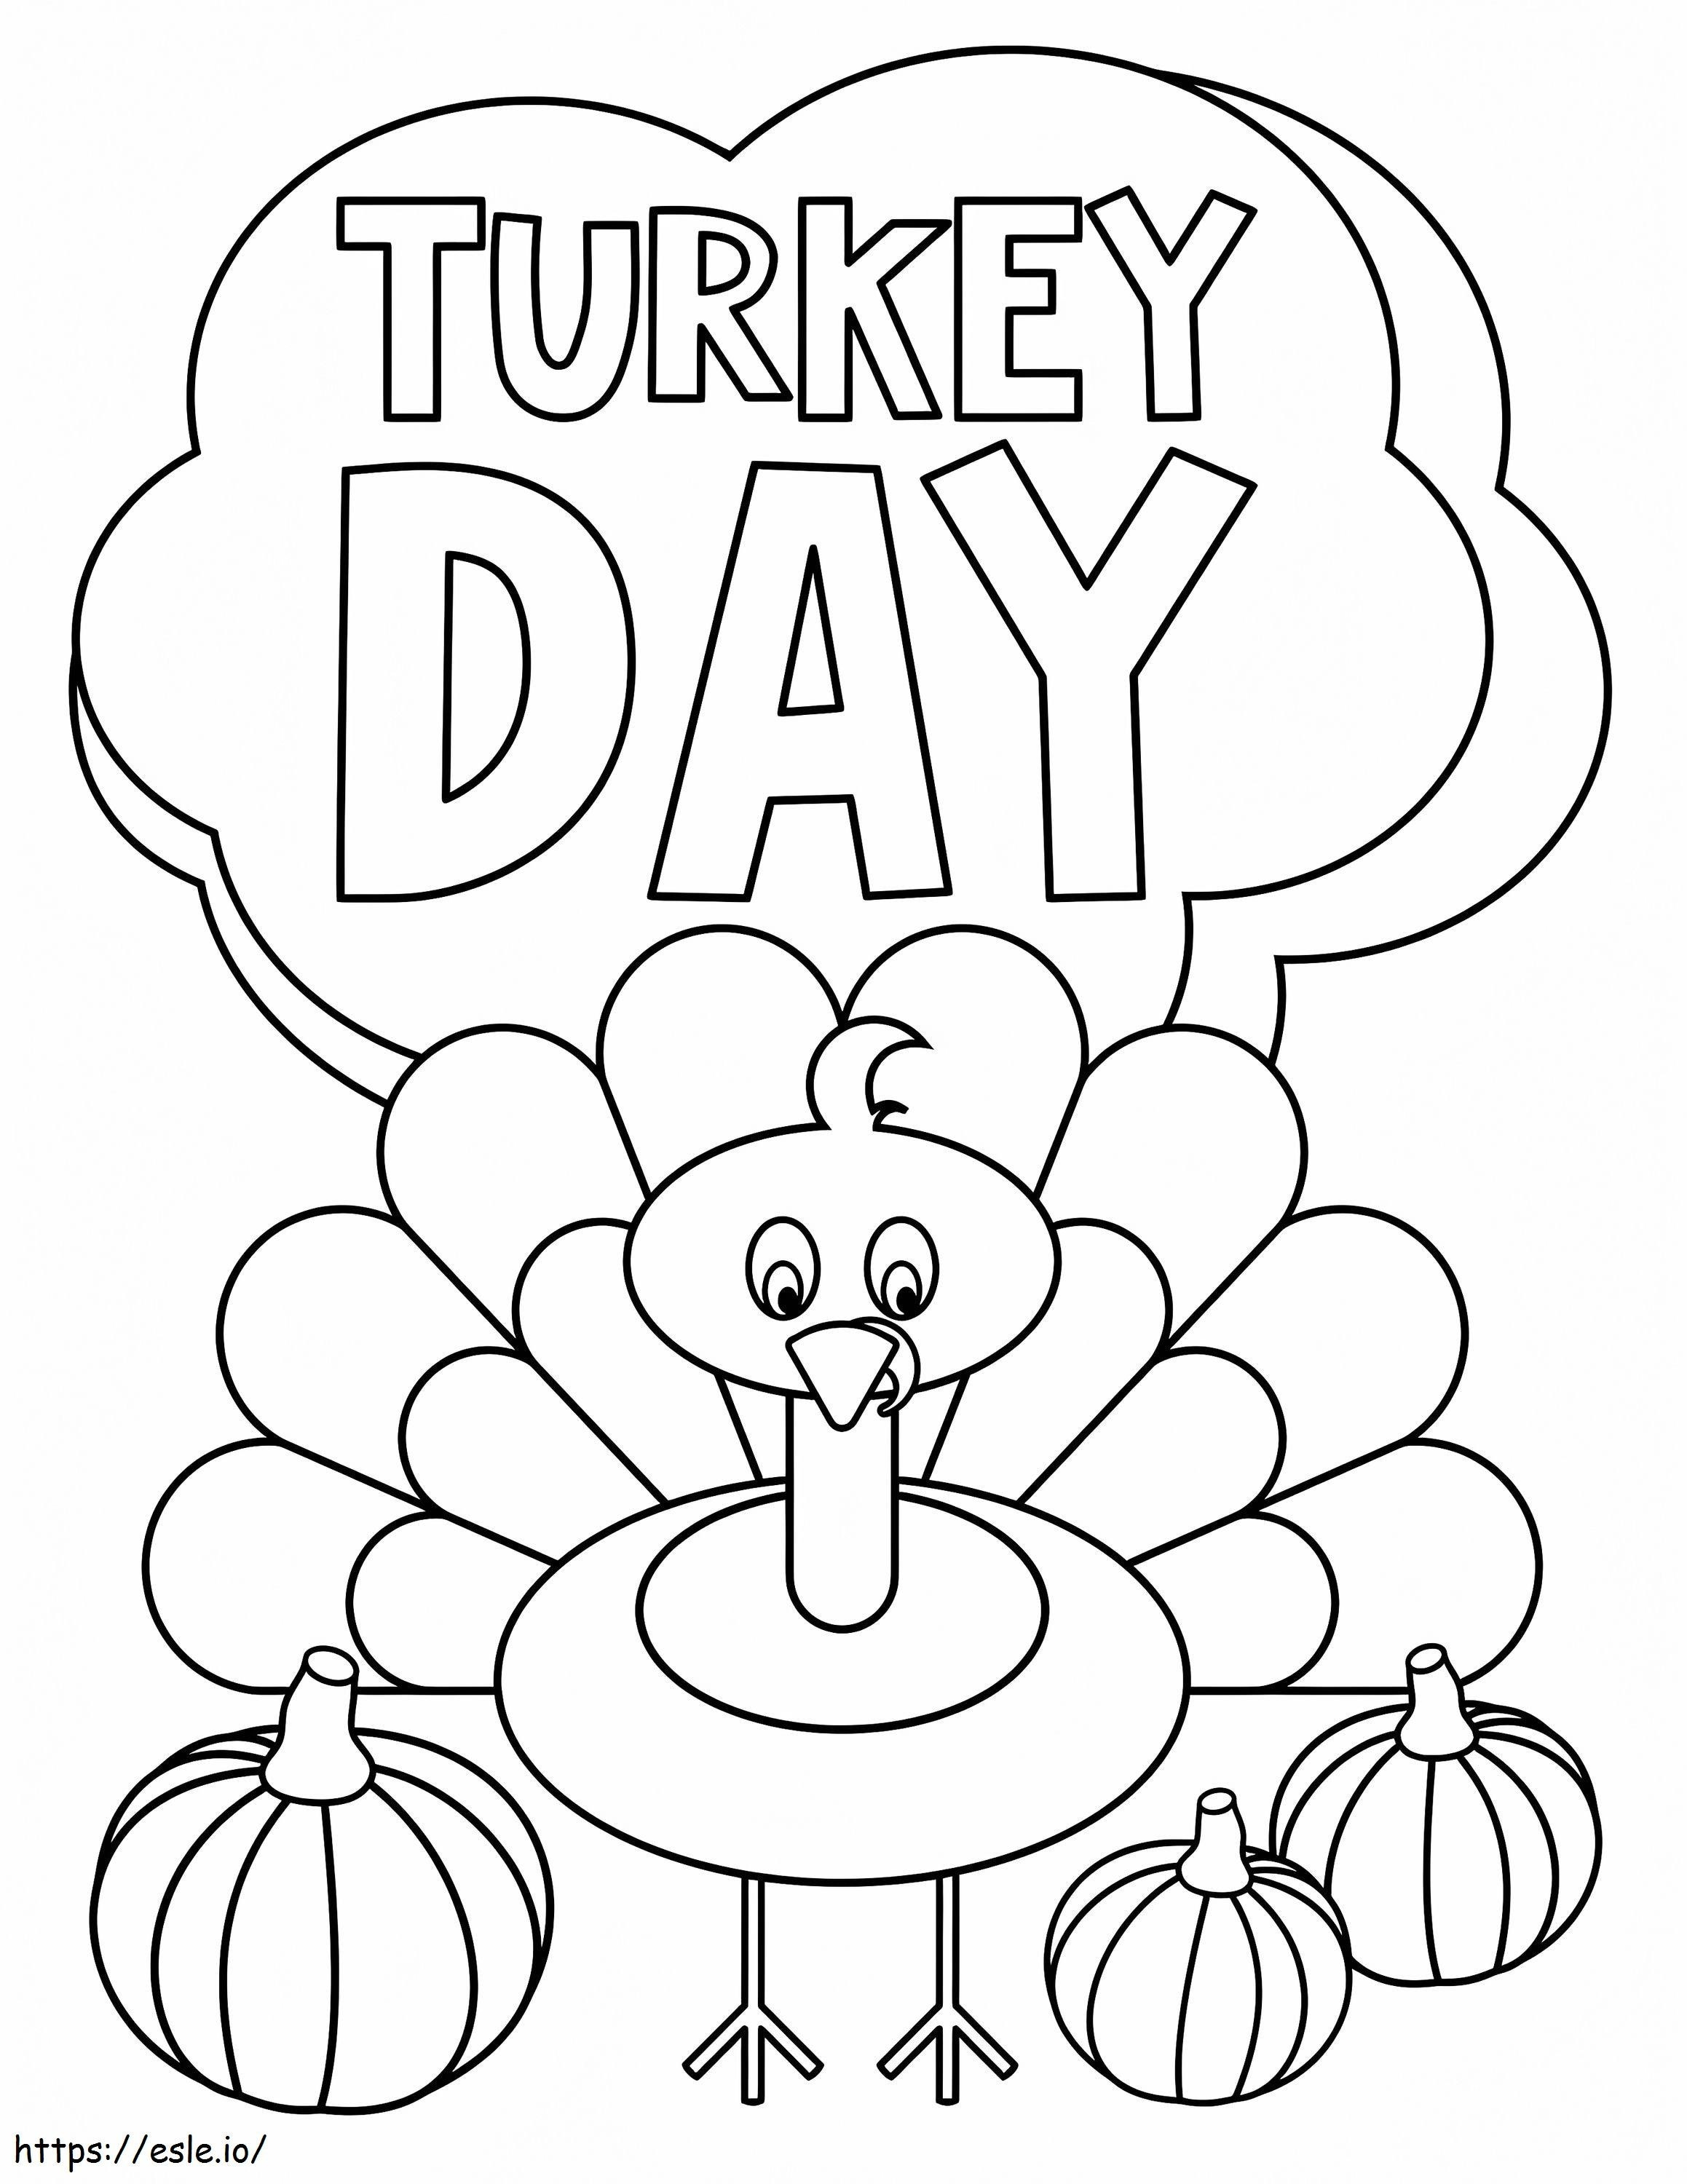 1588838288 1569516479Thanksgiving Turkey Day ausmalbilder